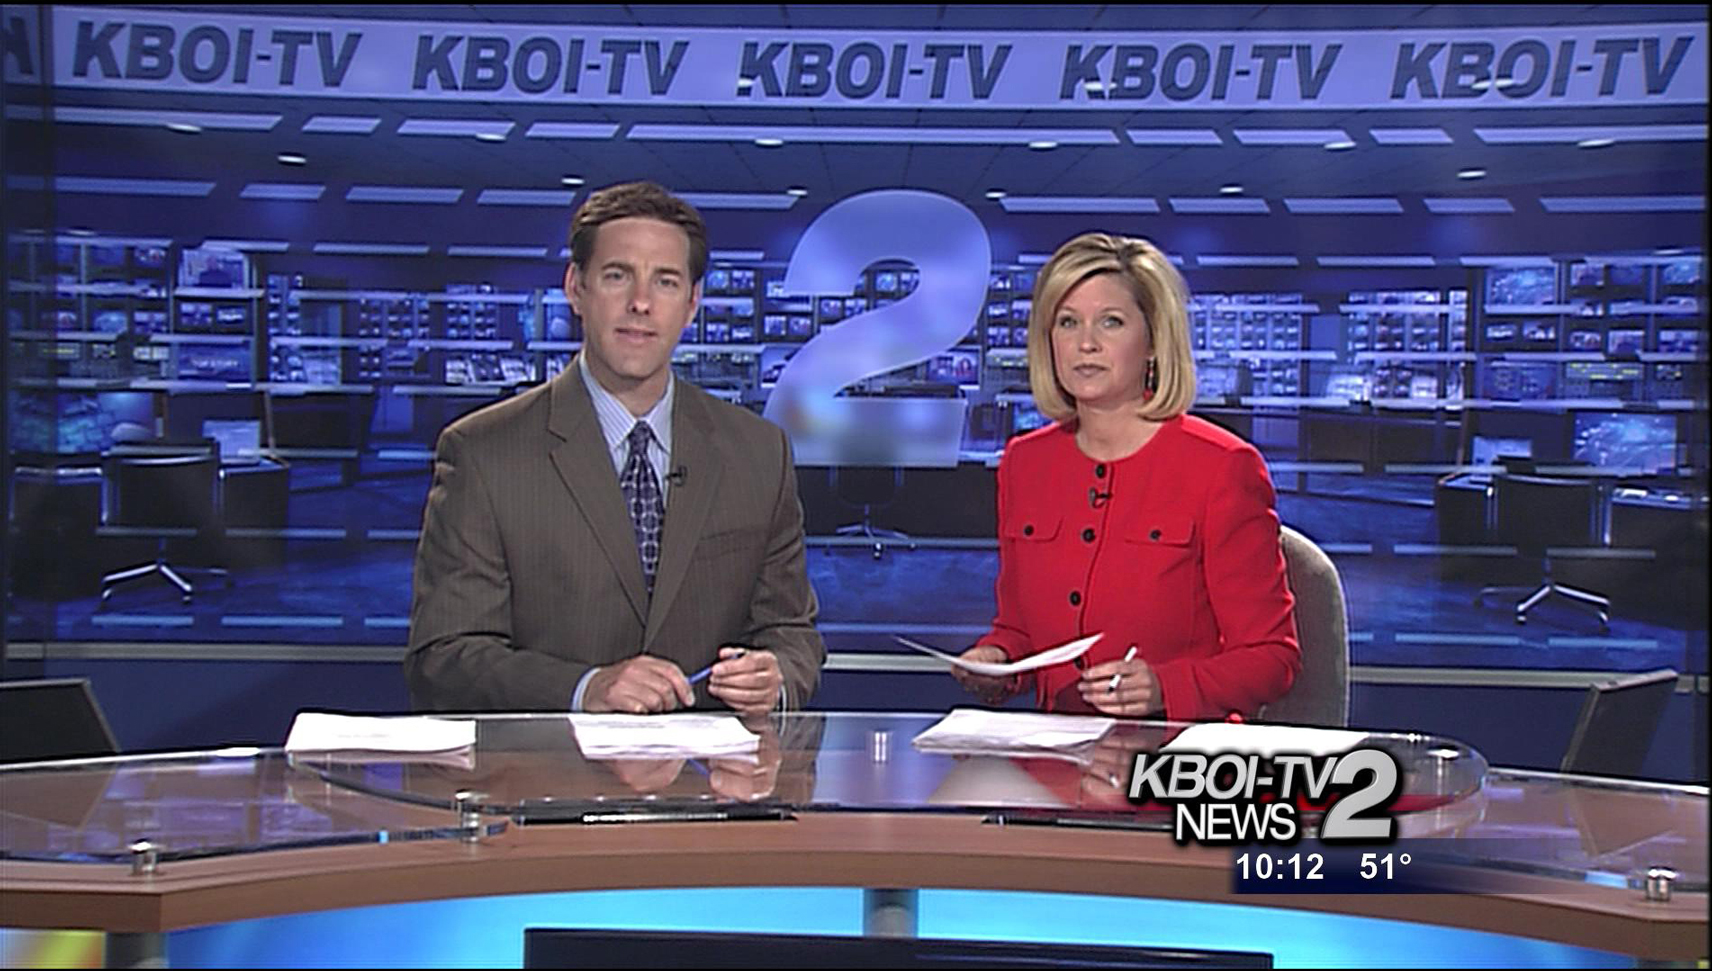 KBOI TV Channel 2 Boise, Idaho